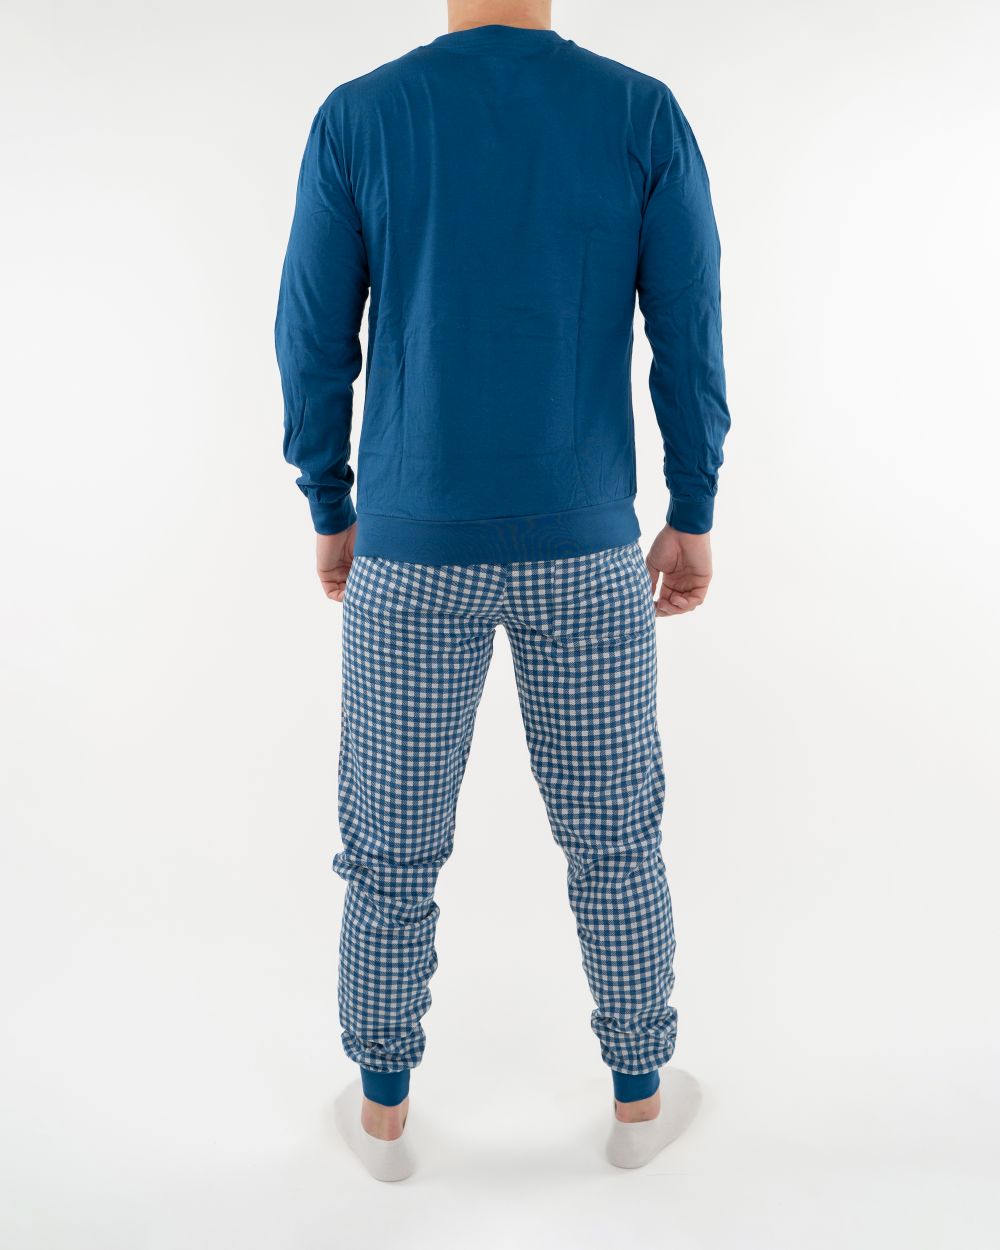 Navigare Intimo muška pidžama plave boje